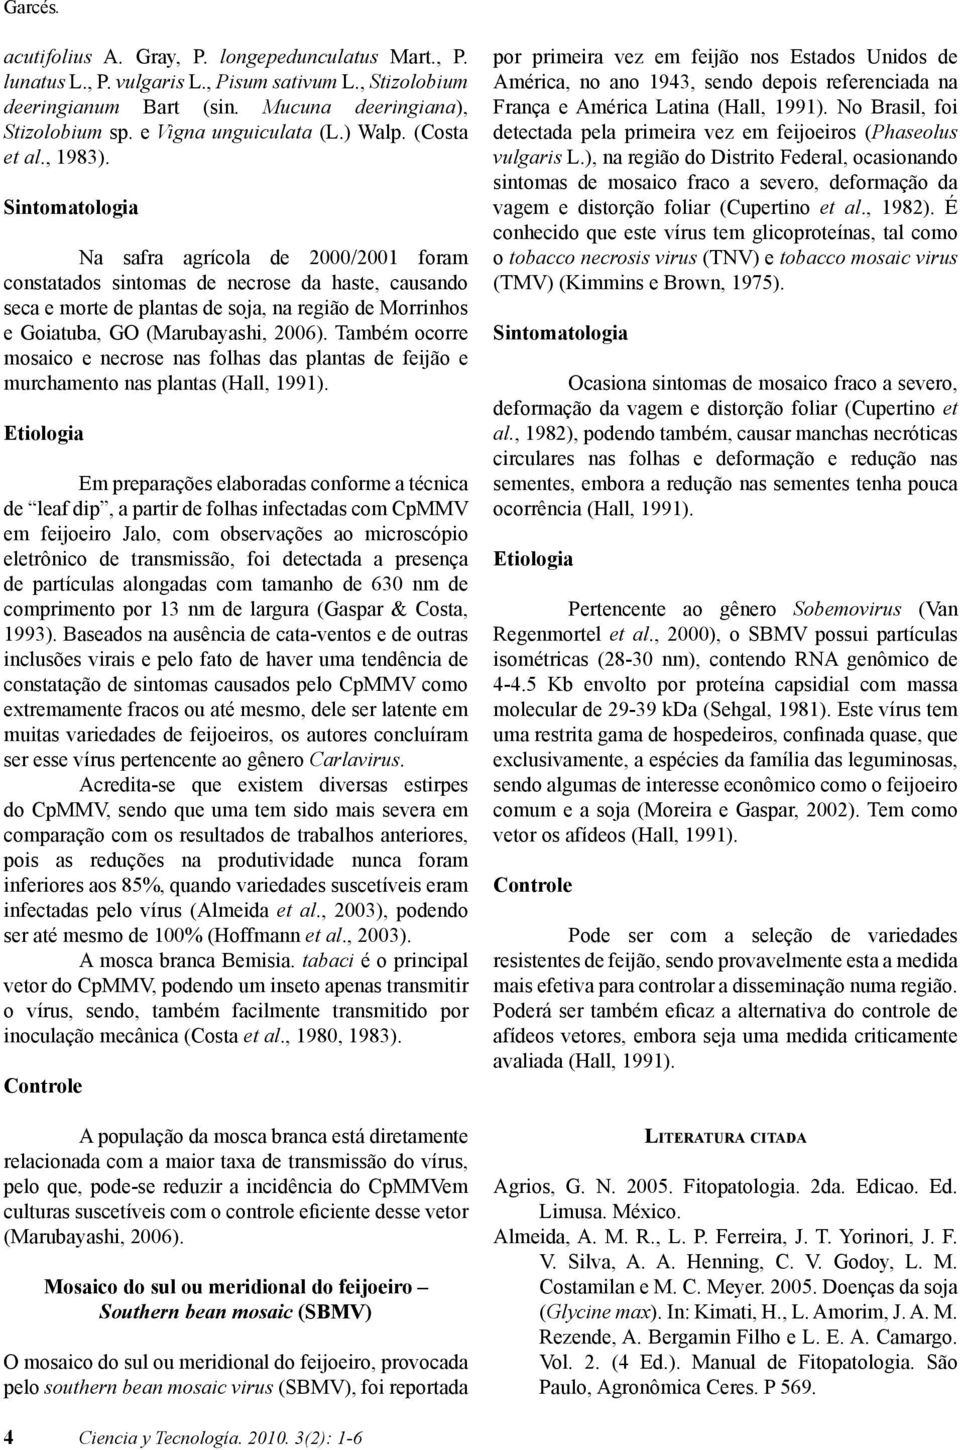 Na safra agrícola de 2000/2001 foram constatados sintomas de necrose da haste, causando seca e morte de plantas de soja, na região de Morrinhos e Goiatuba, GO (Marubayashi, 2006).